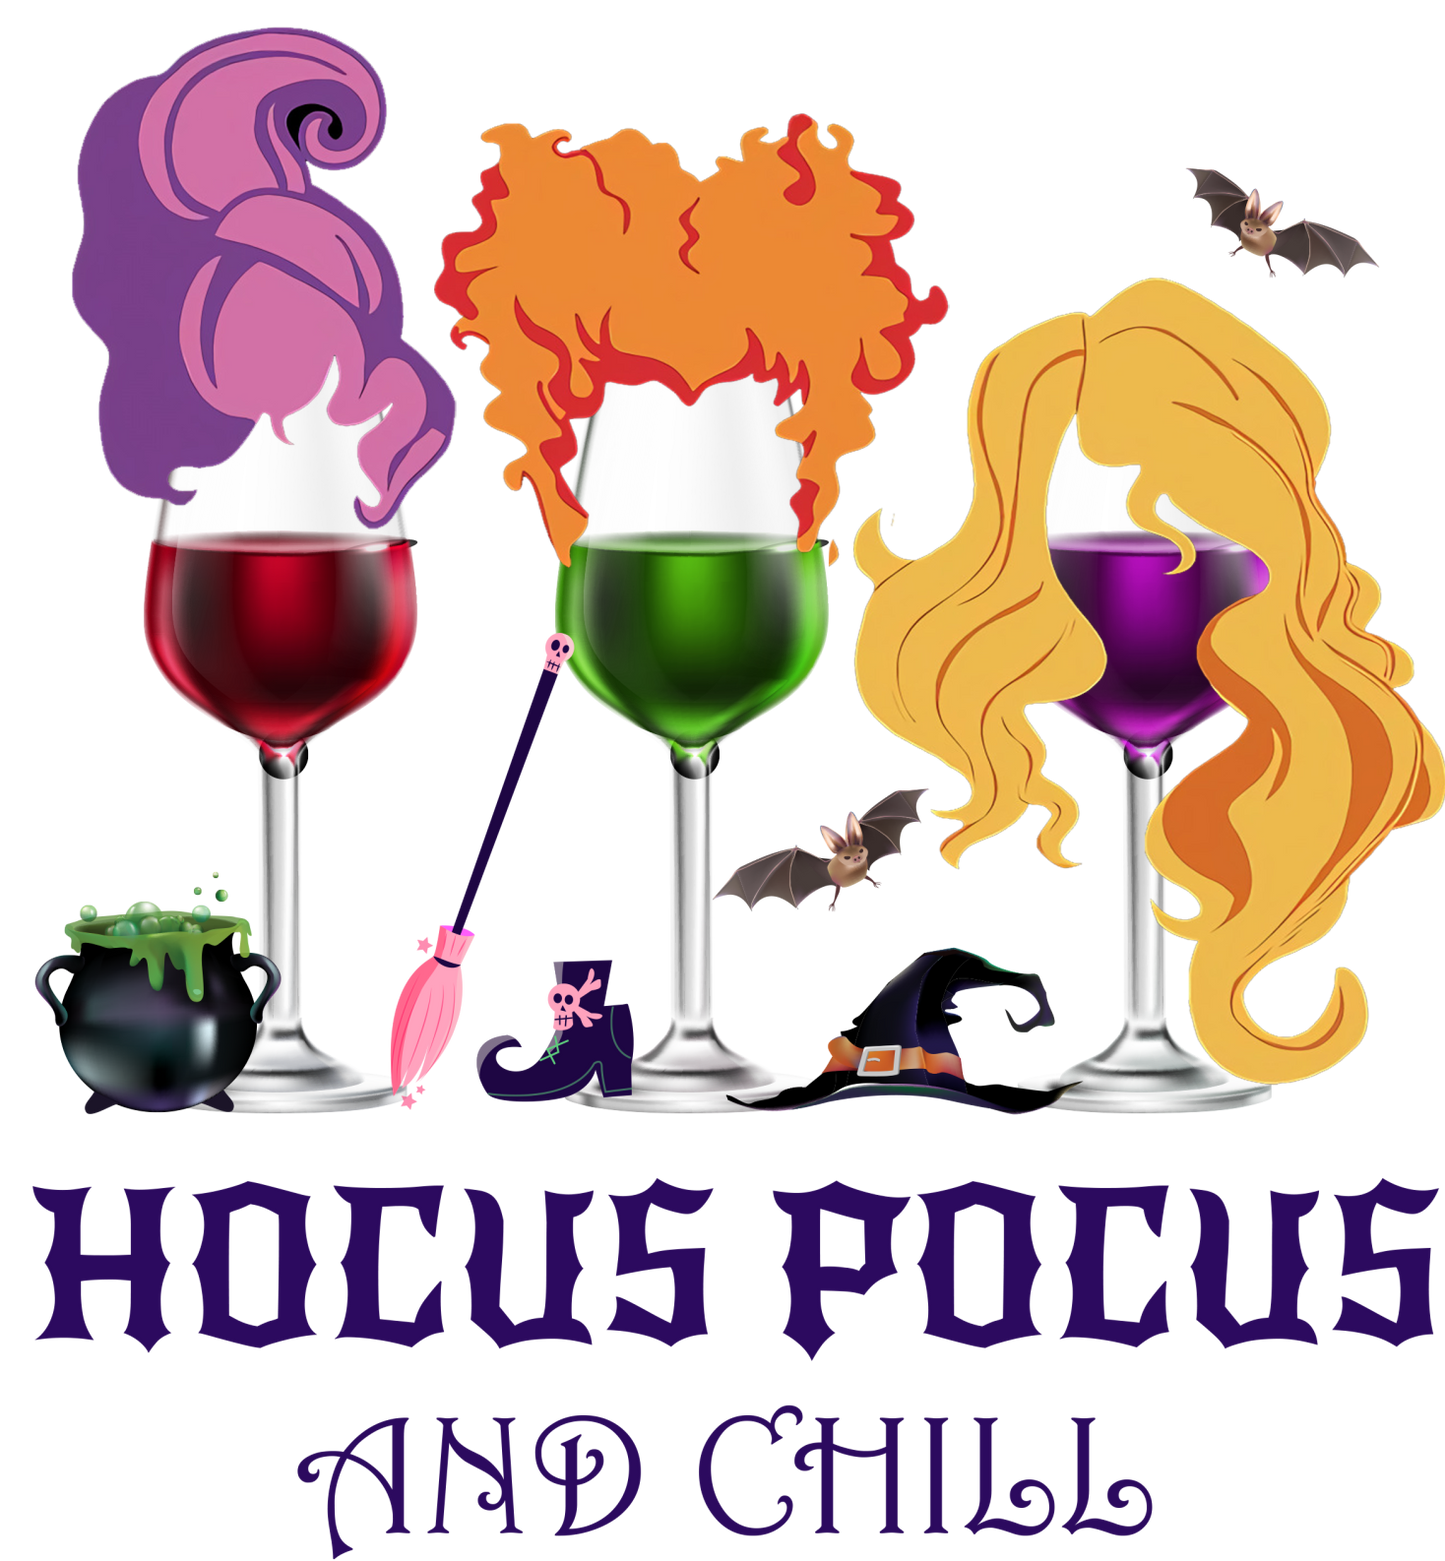 Hocus Pocus and Chill Design Transfer